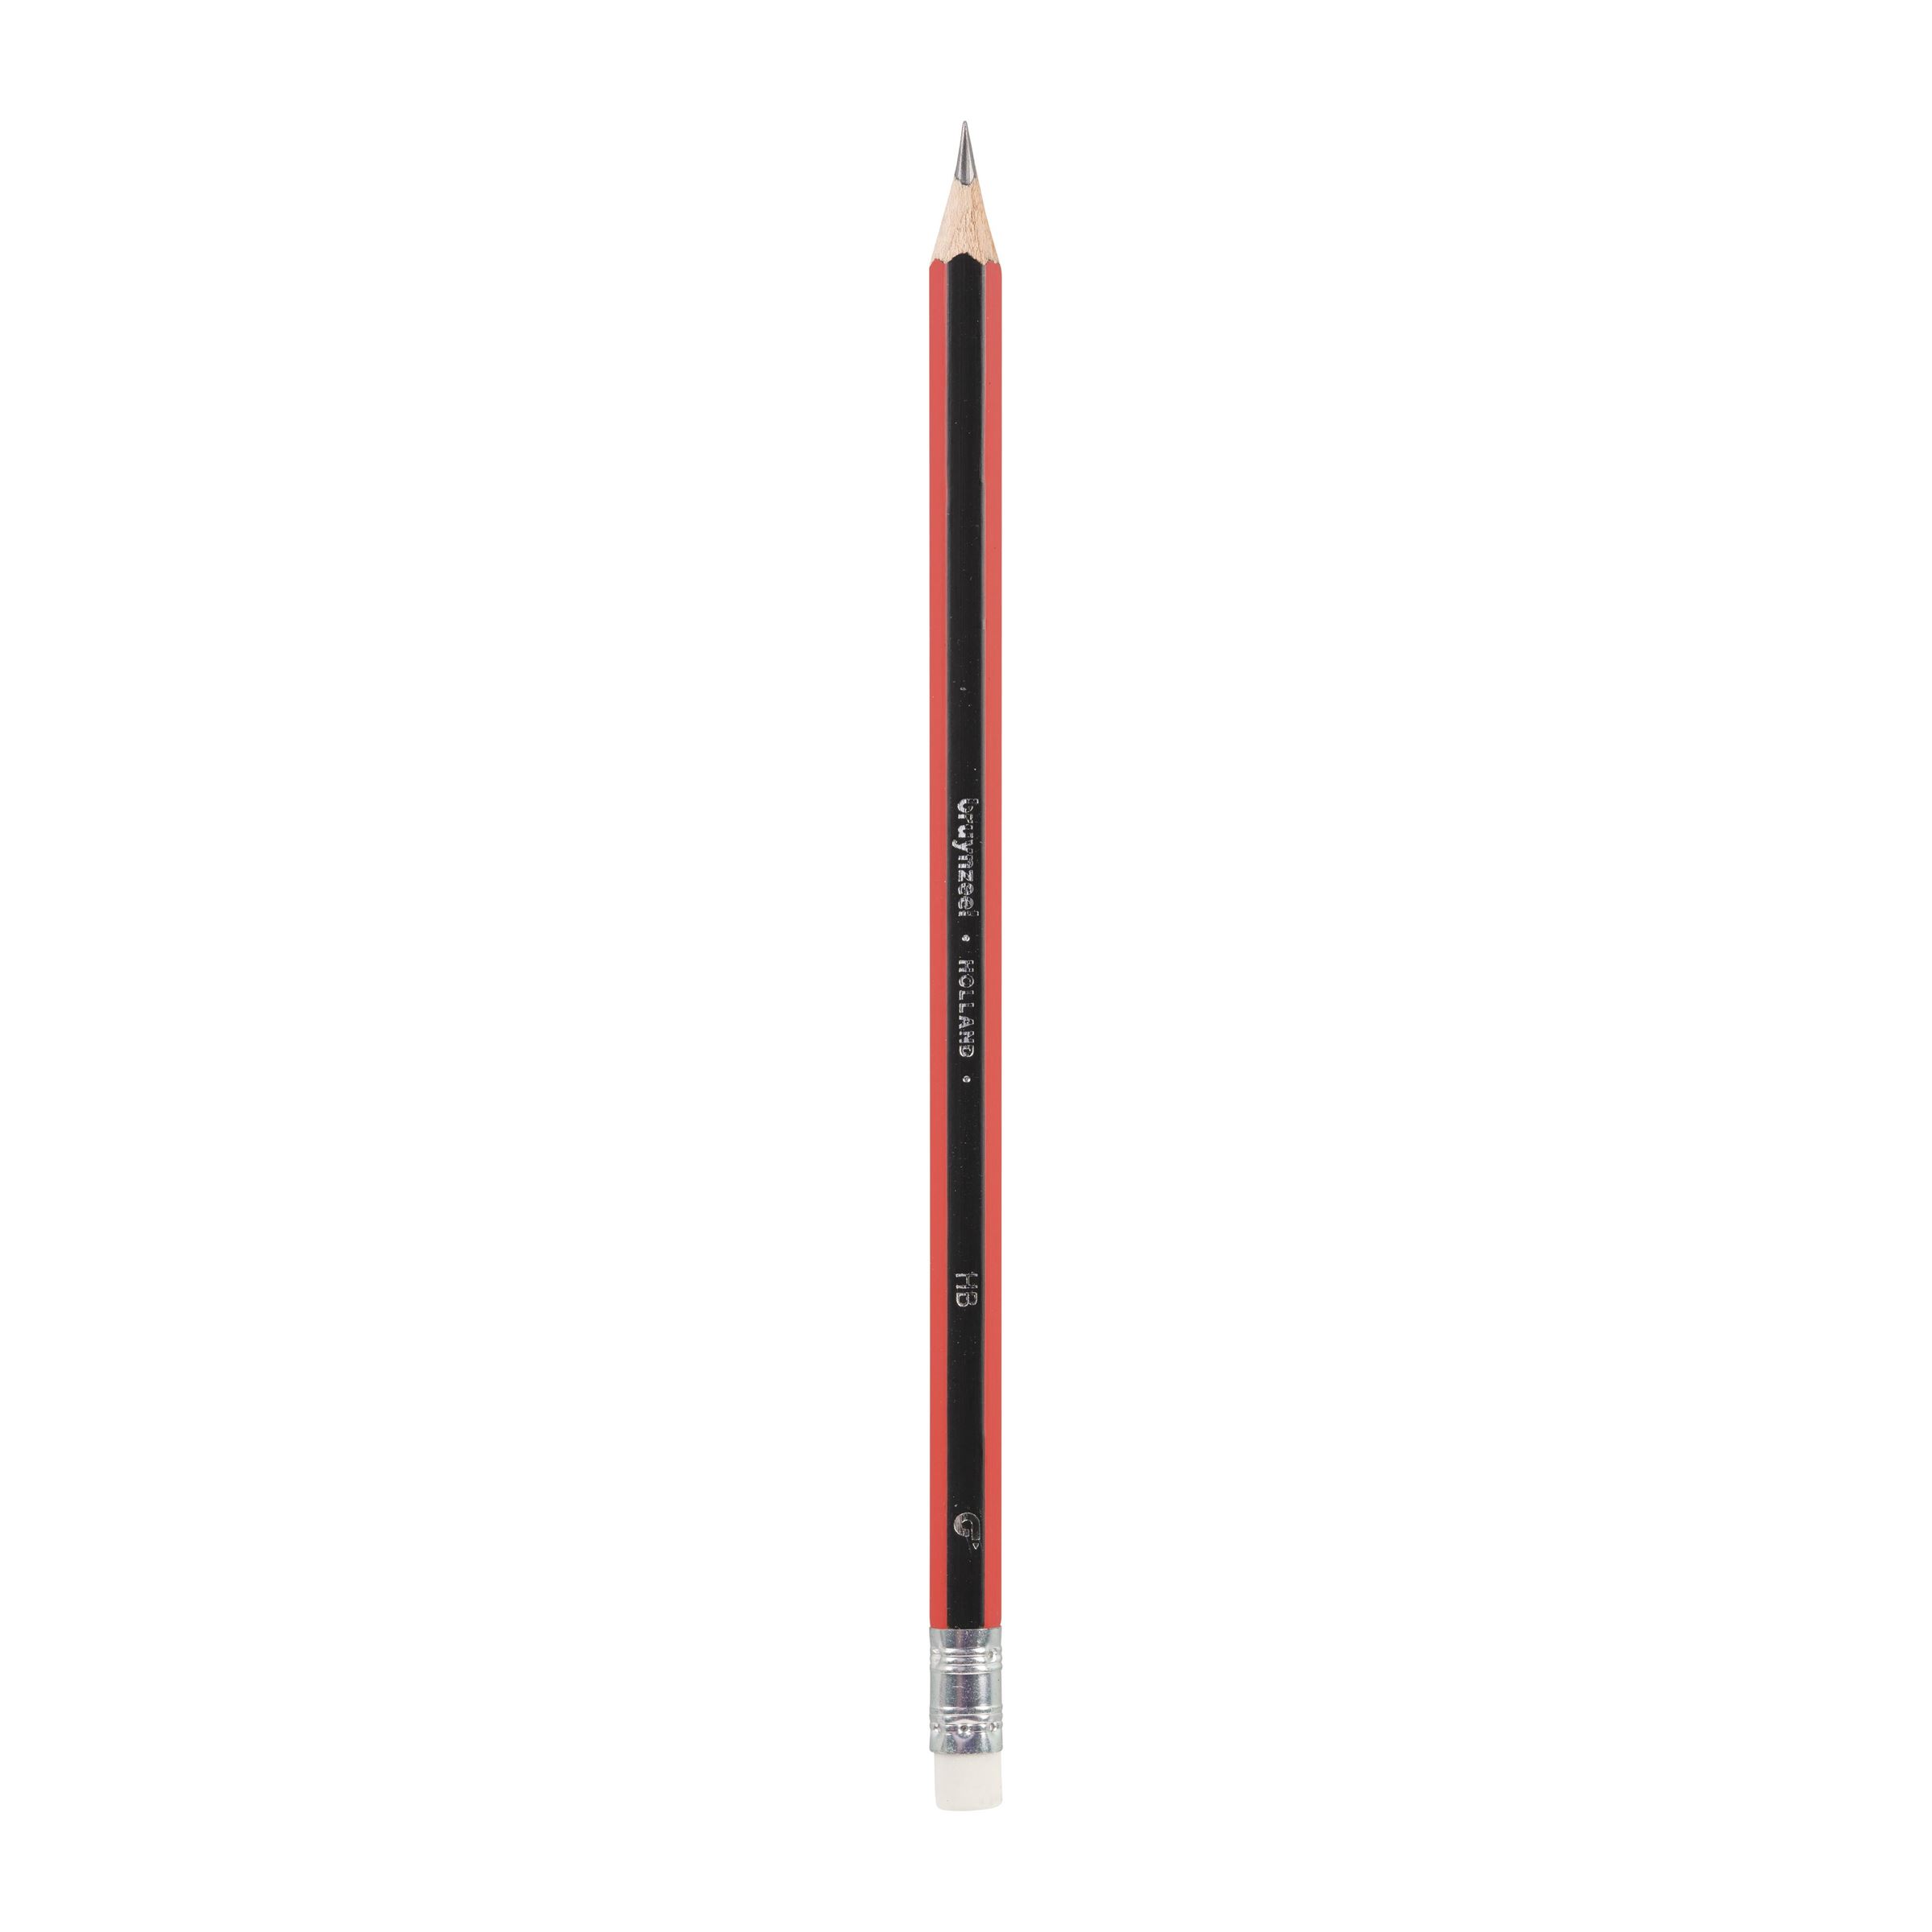 7 HB Graphite Pencils Sharpener and Eraser Bruynzeel Essentials Study Set 